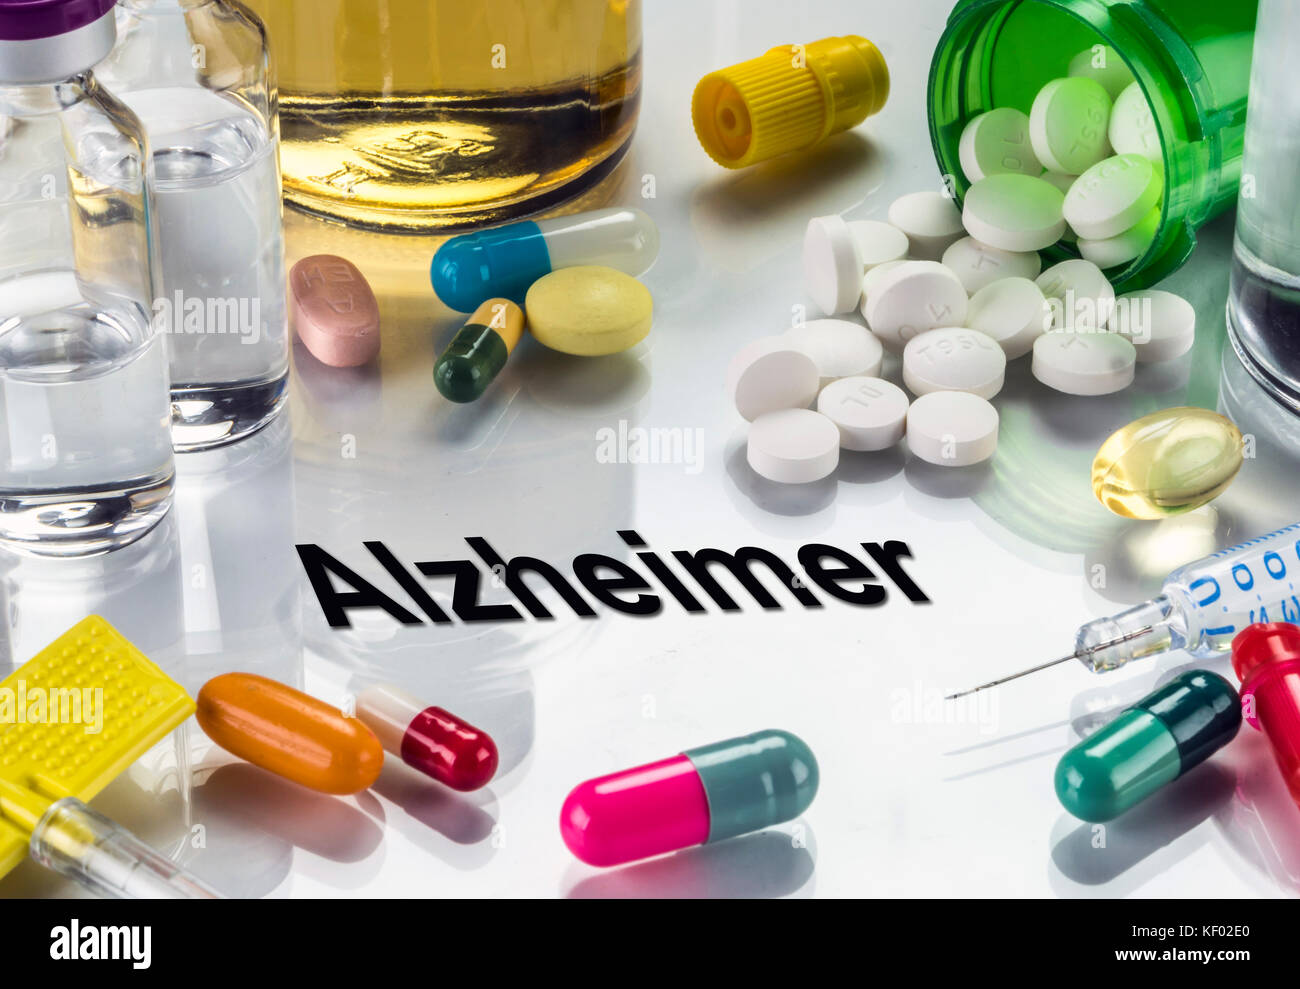 Alzheimer, Arzneimittel, die als Konzept der normalen Behandlung, konzeptionelle Bild Stockfoto